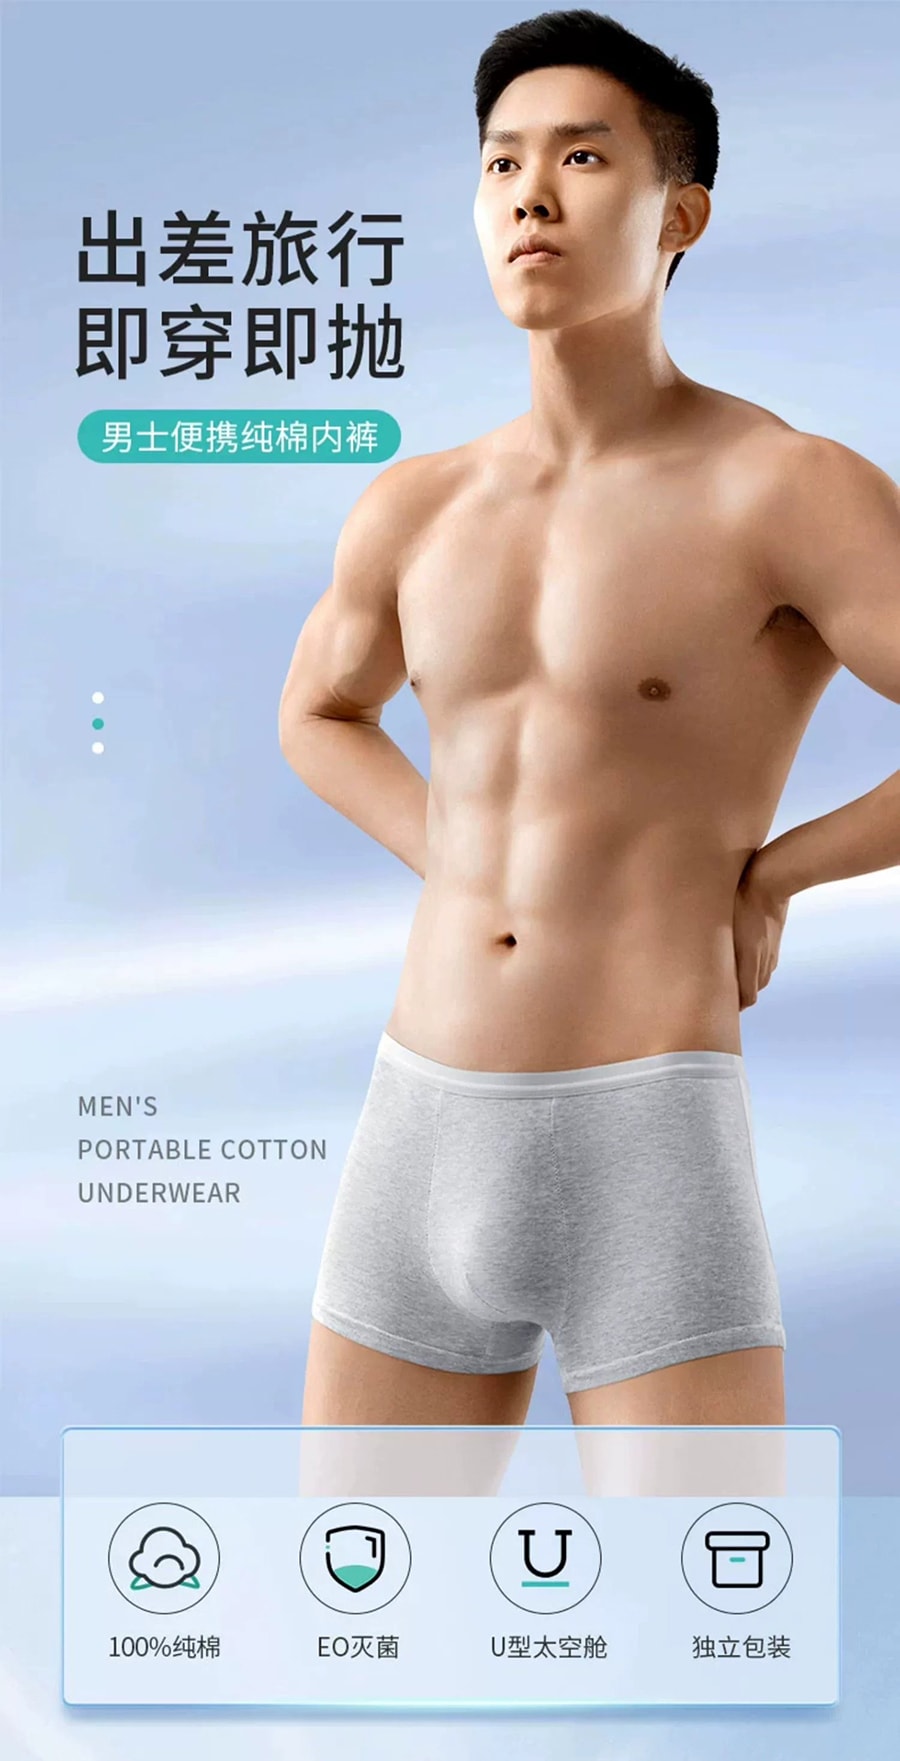 歐億姿 方便舒適一次性男性內褲 灰色 XXL 3條裝無需清洗 不僅僅是方便